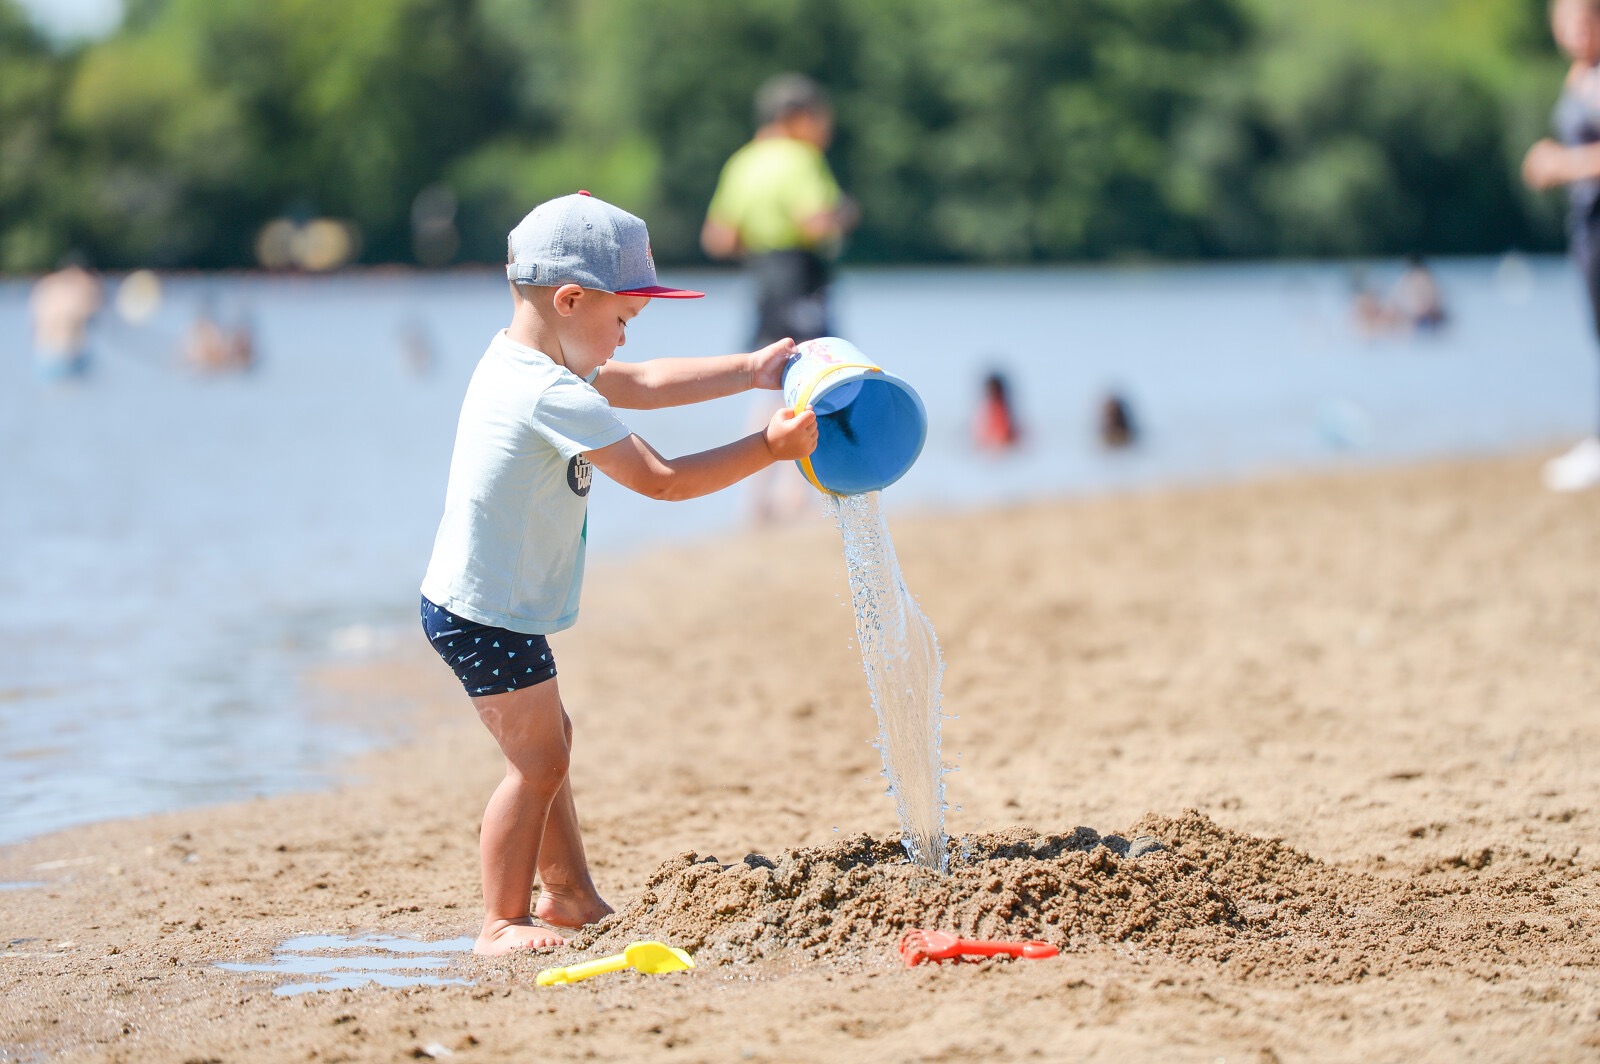 Les clubs de plage, l'activité estivale incontournable des enfants